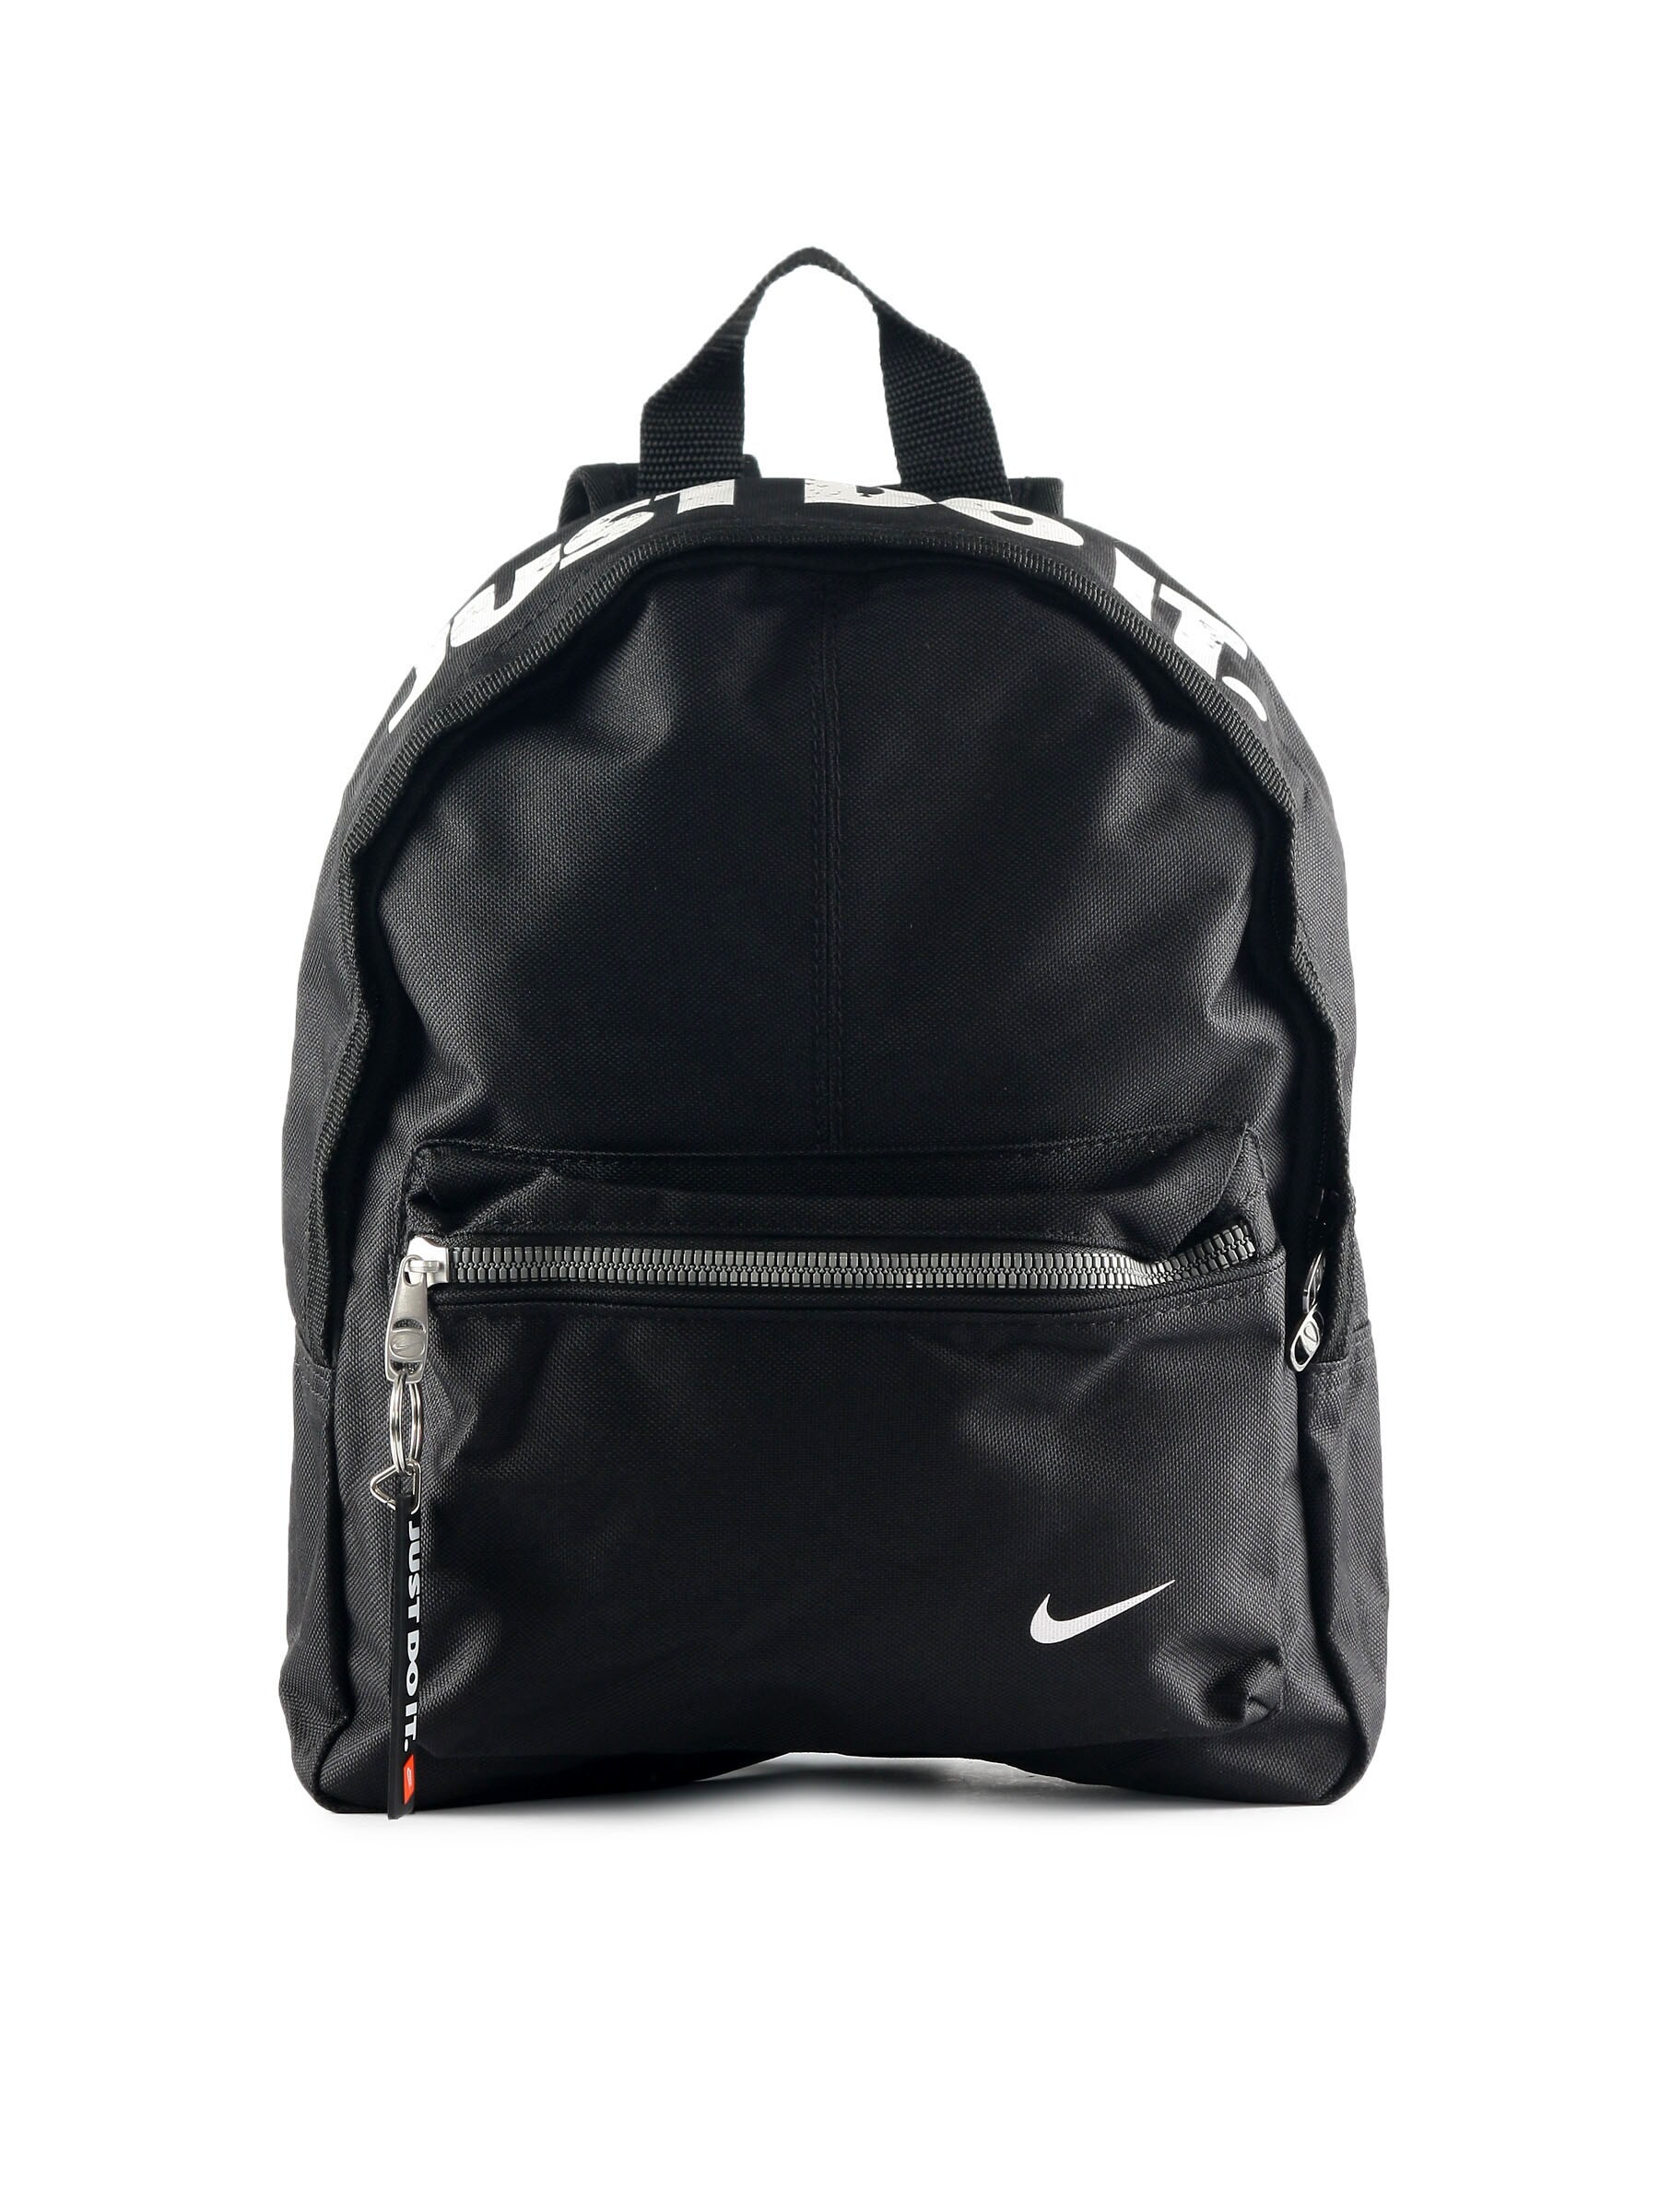 Nike Unisex Classic Base Black Backpack